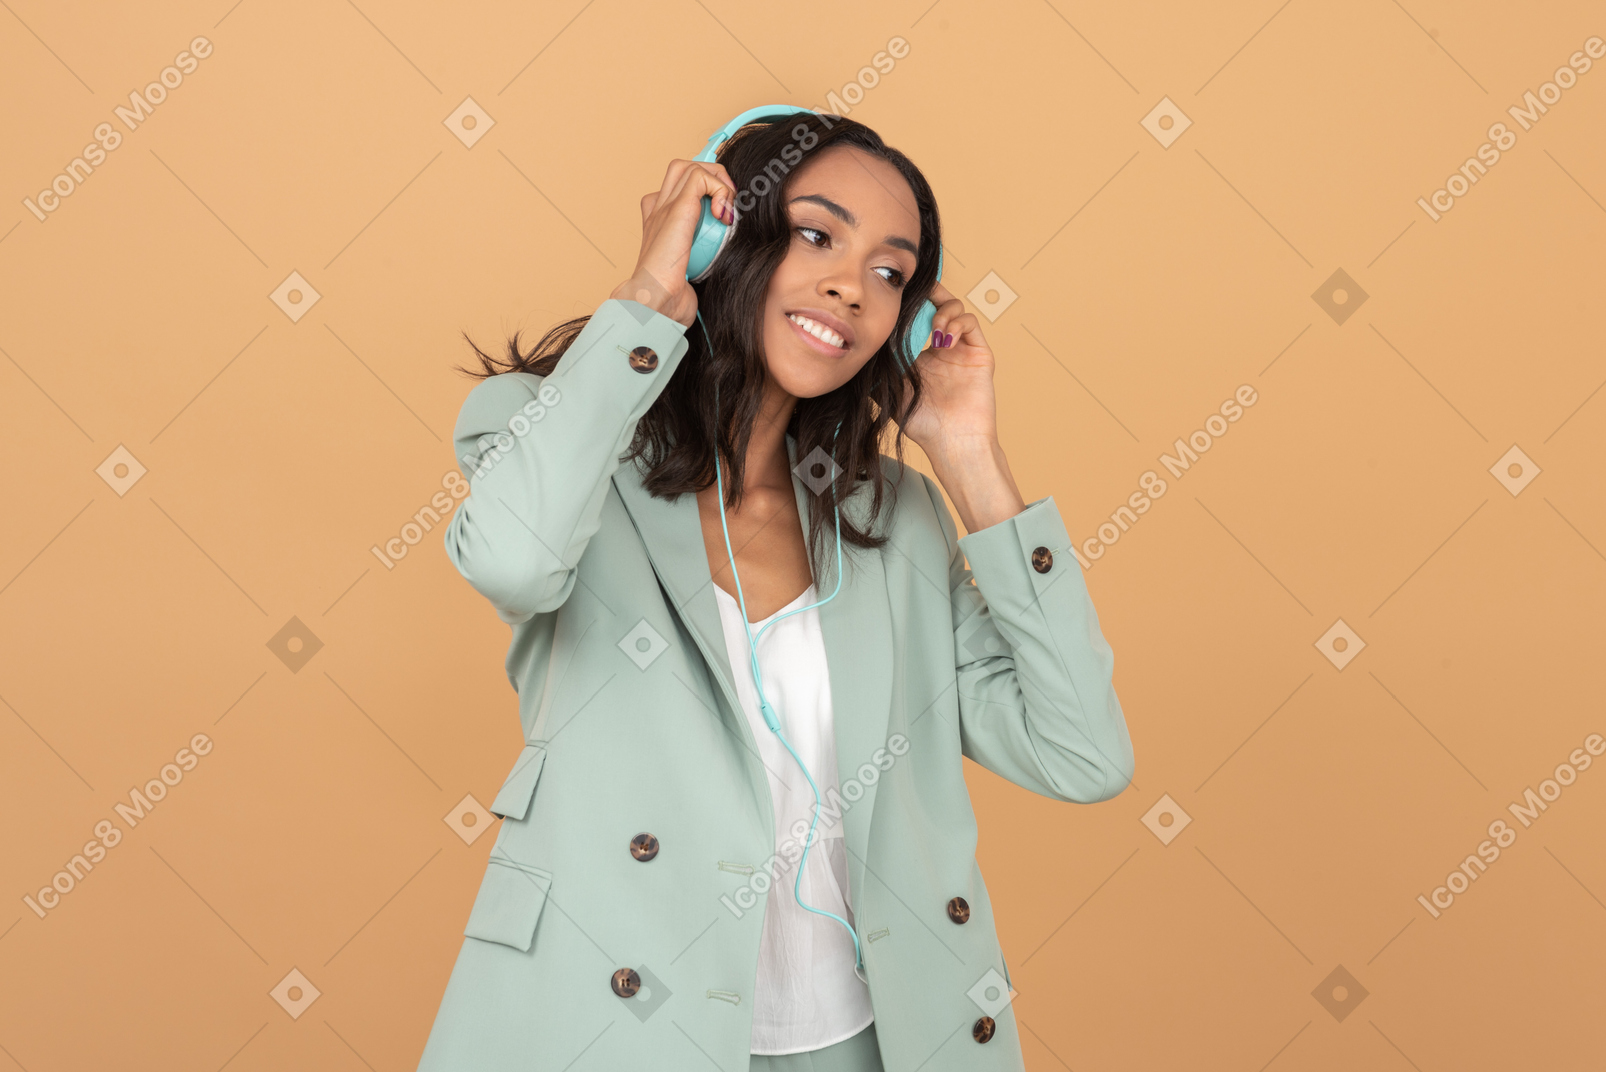 Pretty young girl enjoying music